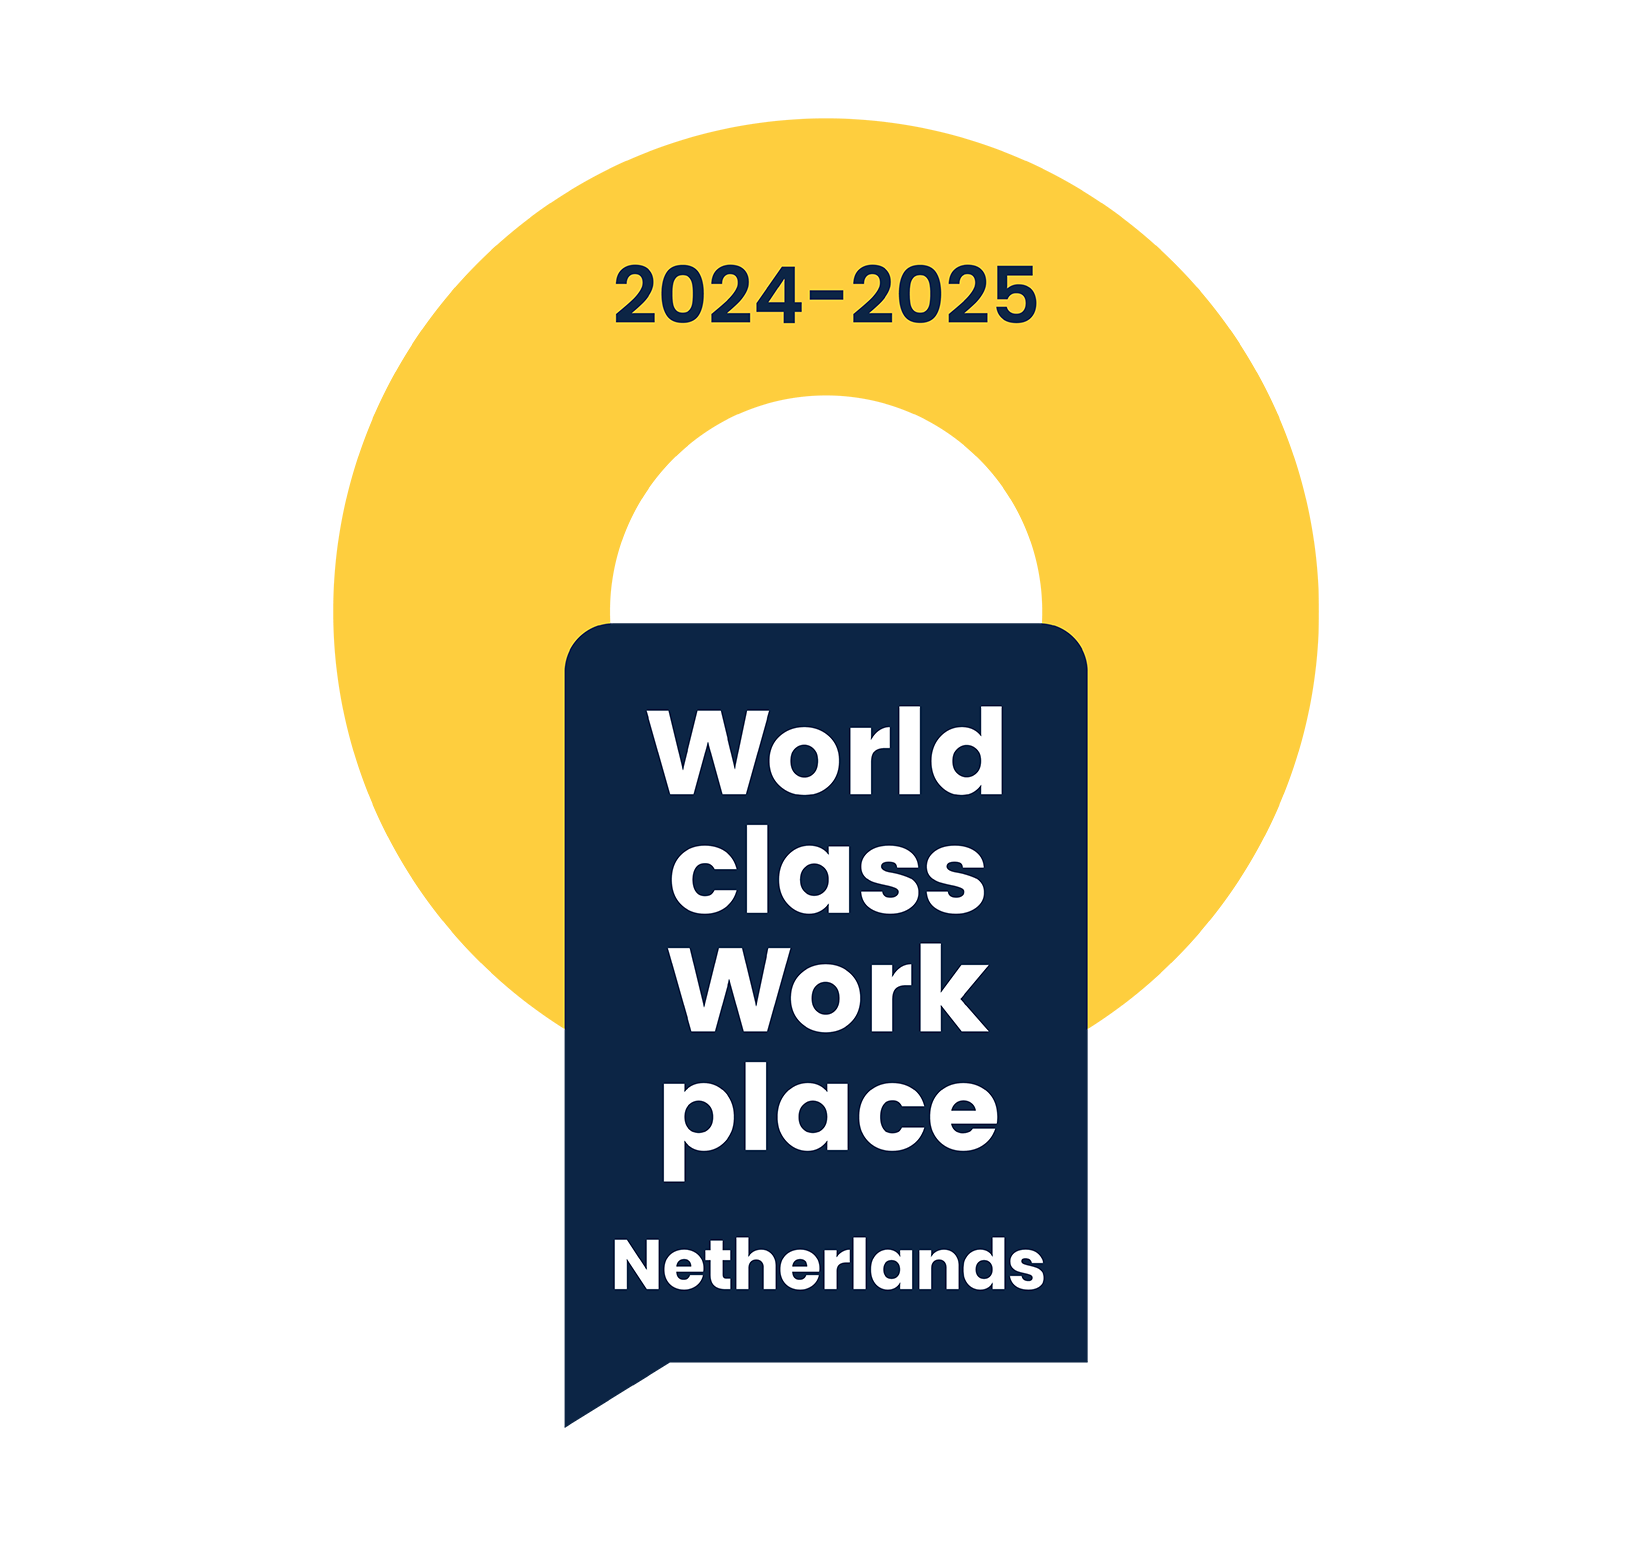 de Alliantie behoort als werkgever tot de World class work place 2024-2025